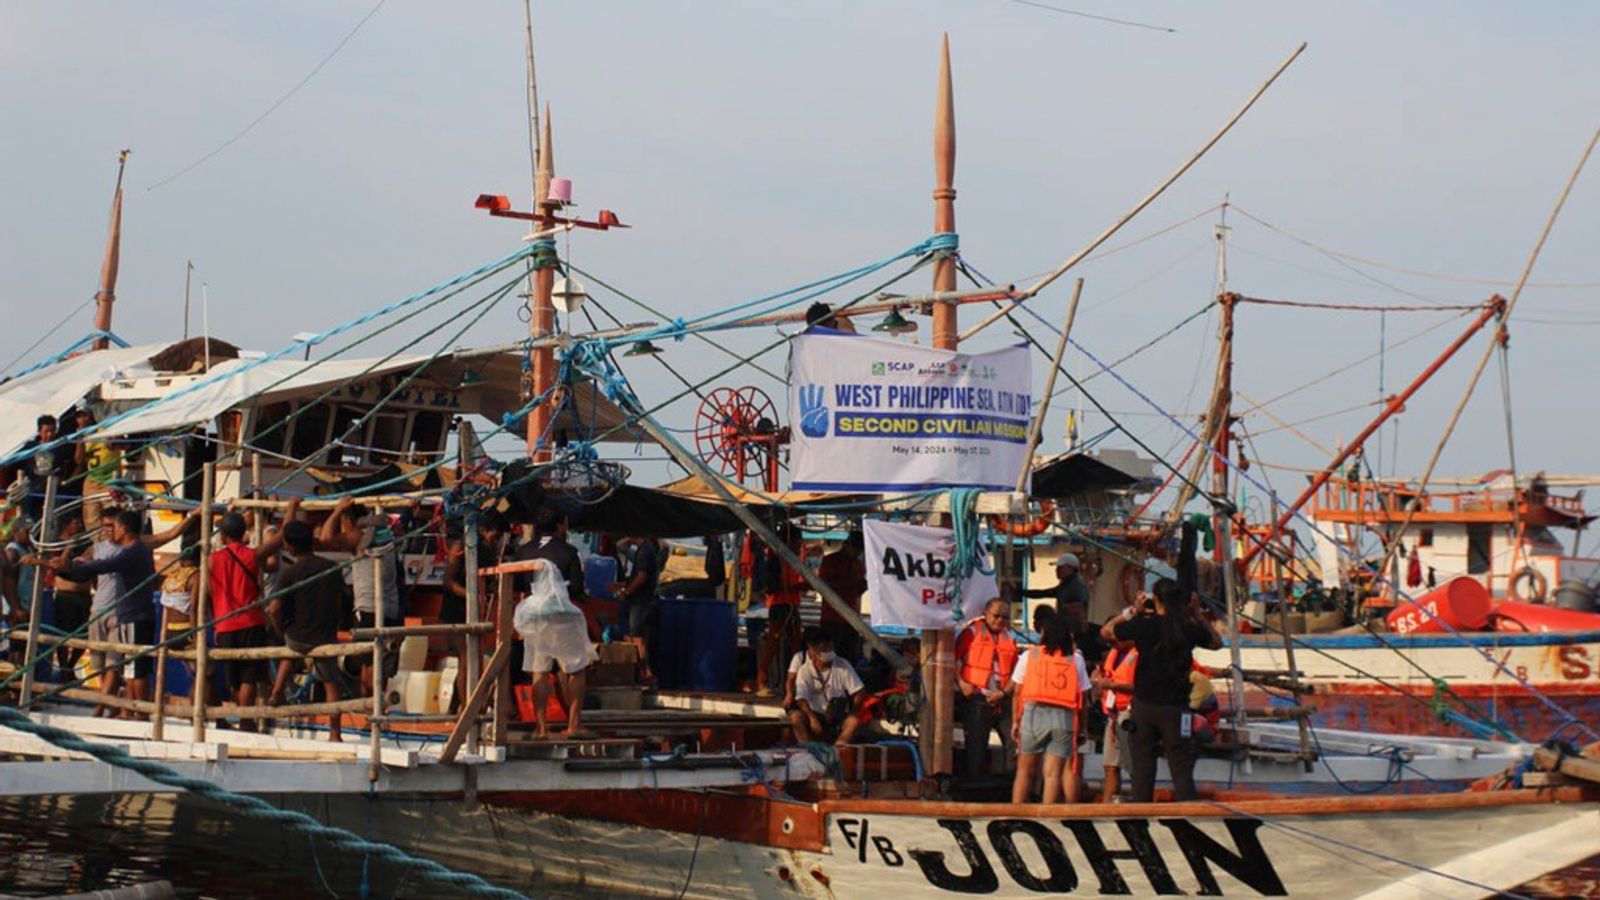 Des navires philippins déployés pour regarder les militants naviguer vers la zone de pêche contestée de Scarborough Shoal alors que les tensions en Chine augmentent |  Nouvelles du monde